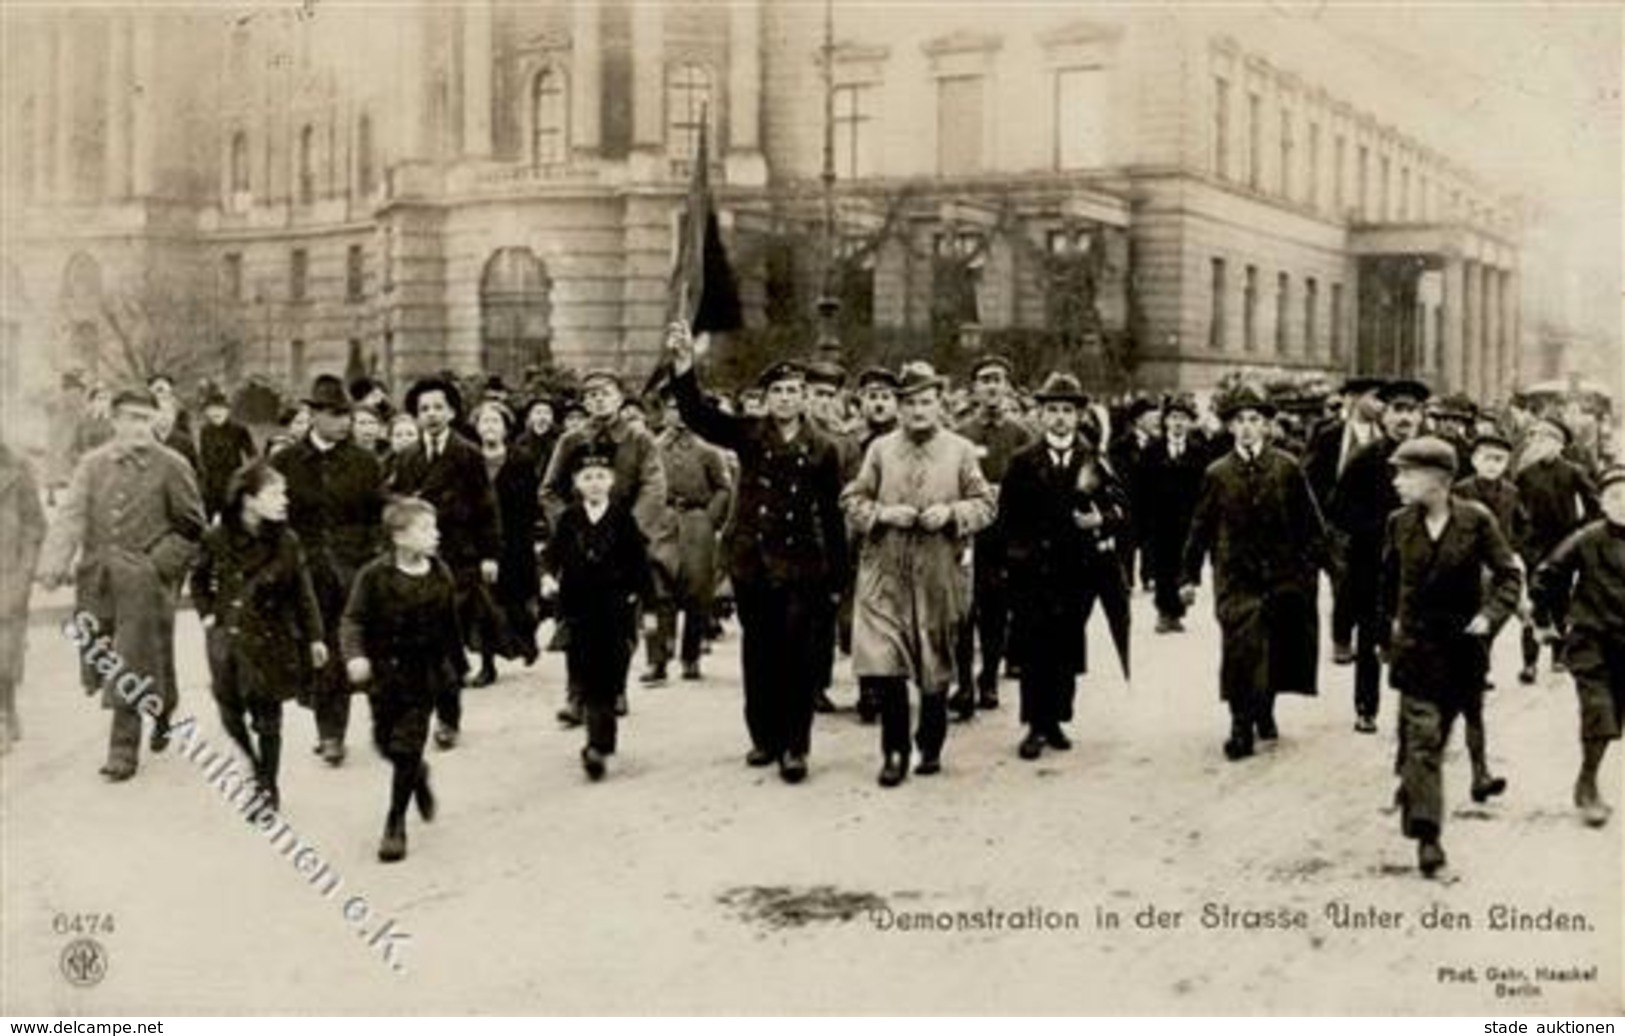 REVOLUTION BERLIN 1919 - Demonstration In Der Strasse Unter Den Linden NPG 6474 I - Warships